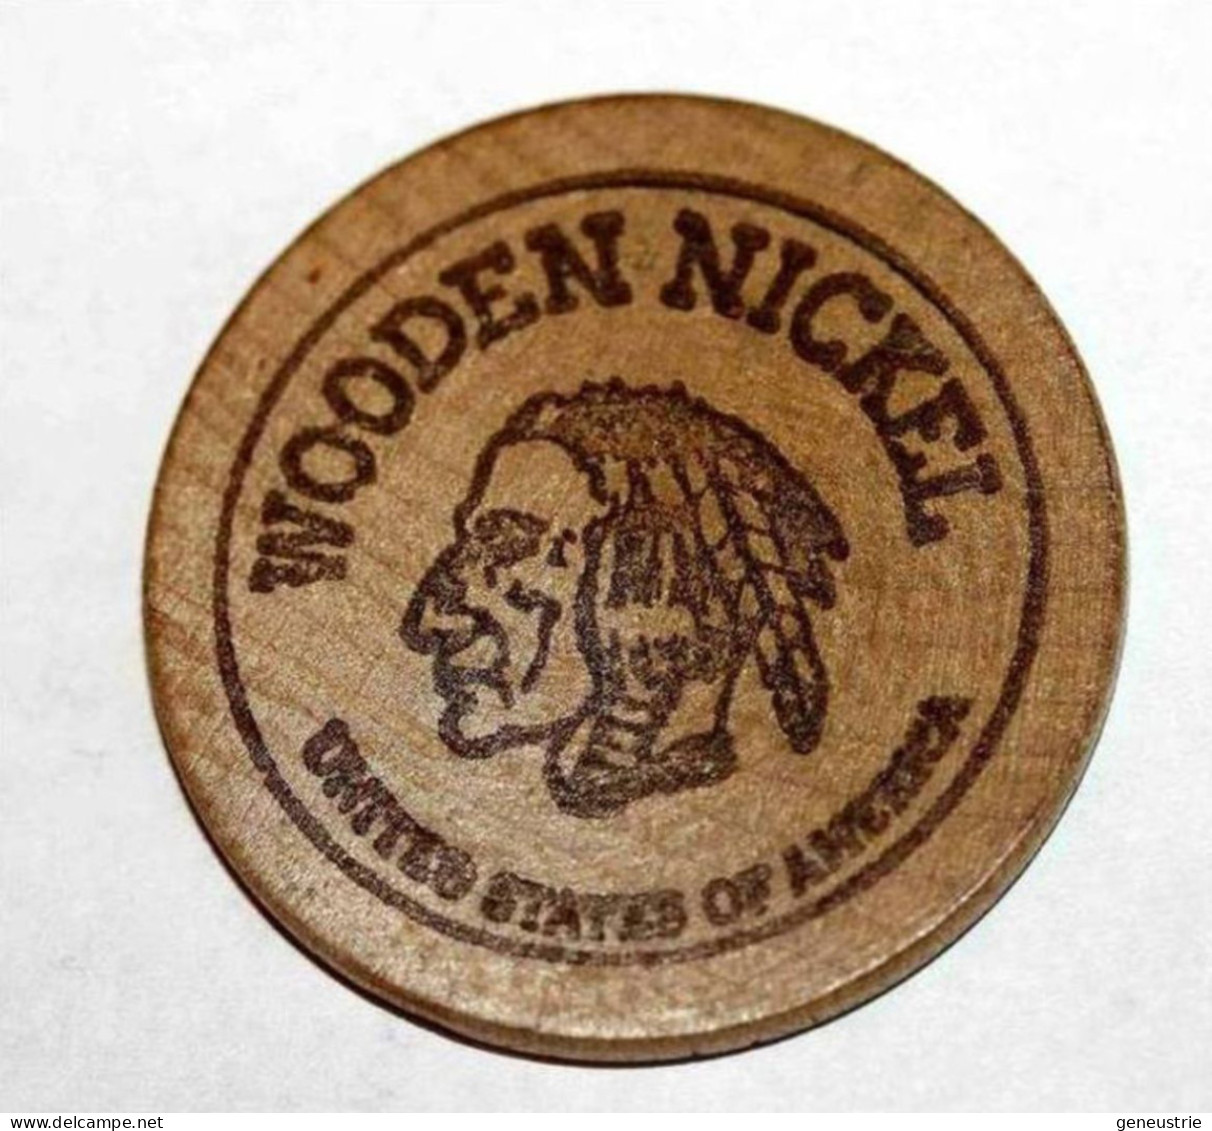 Wooden Token - Wooden Nickel - Jeton Bois Monnaie Nécessité - Tête D'Indien - Neidermyer Poultry 1984 - Etats-Unis - Noodgeld